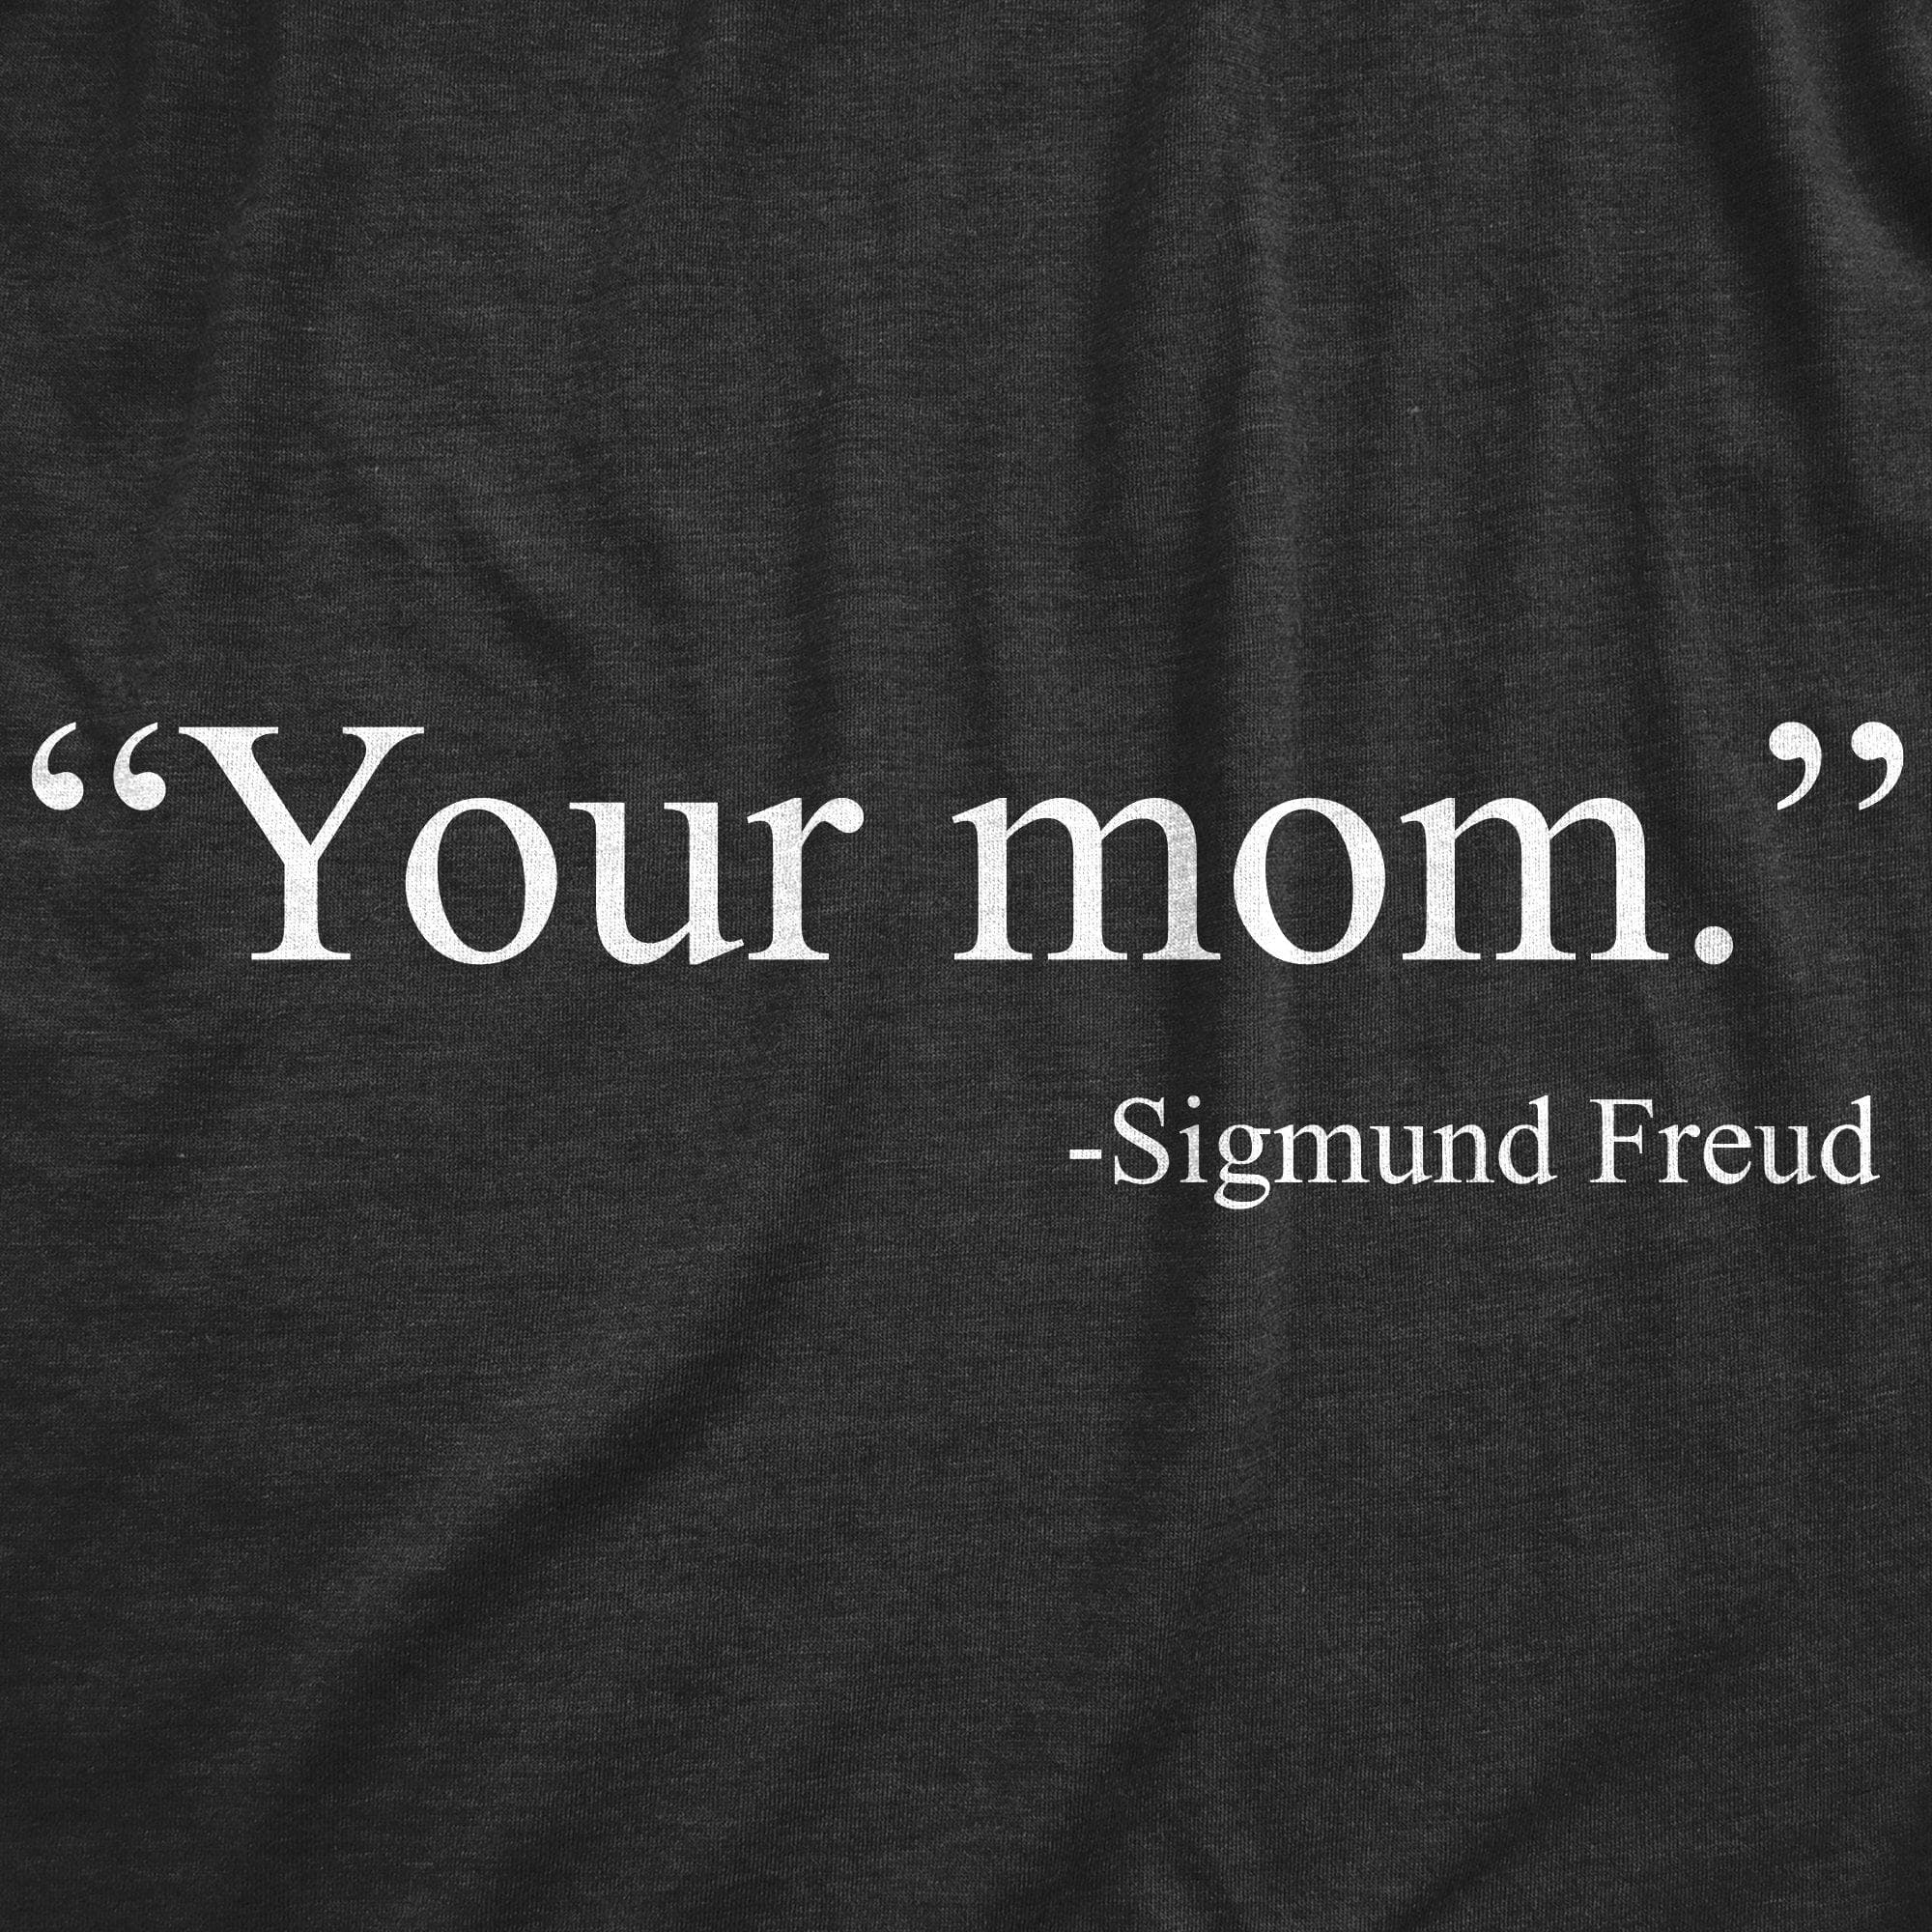 Your Mom -Sigmund Freud Men's Tshirt - Crazy Dog T-Shirts